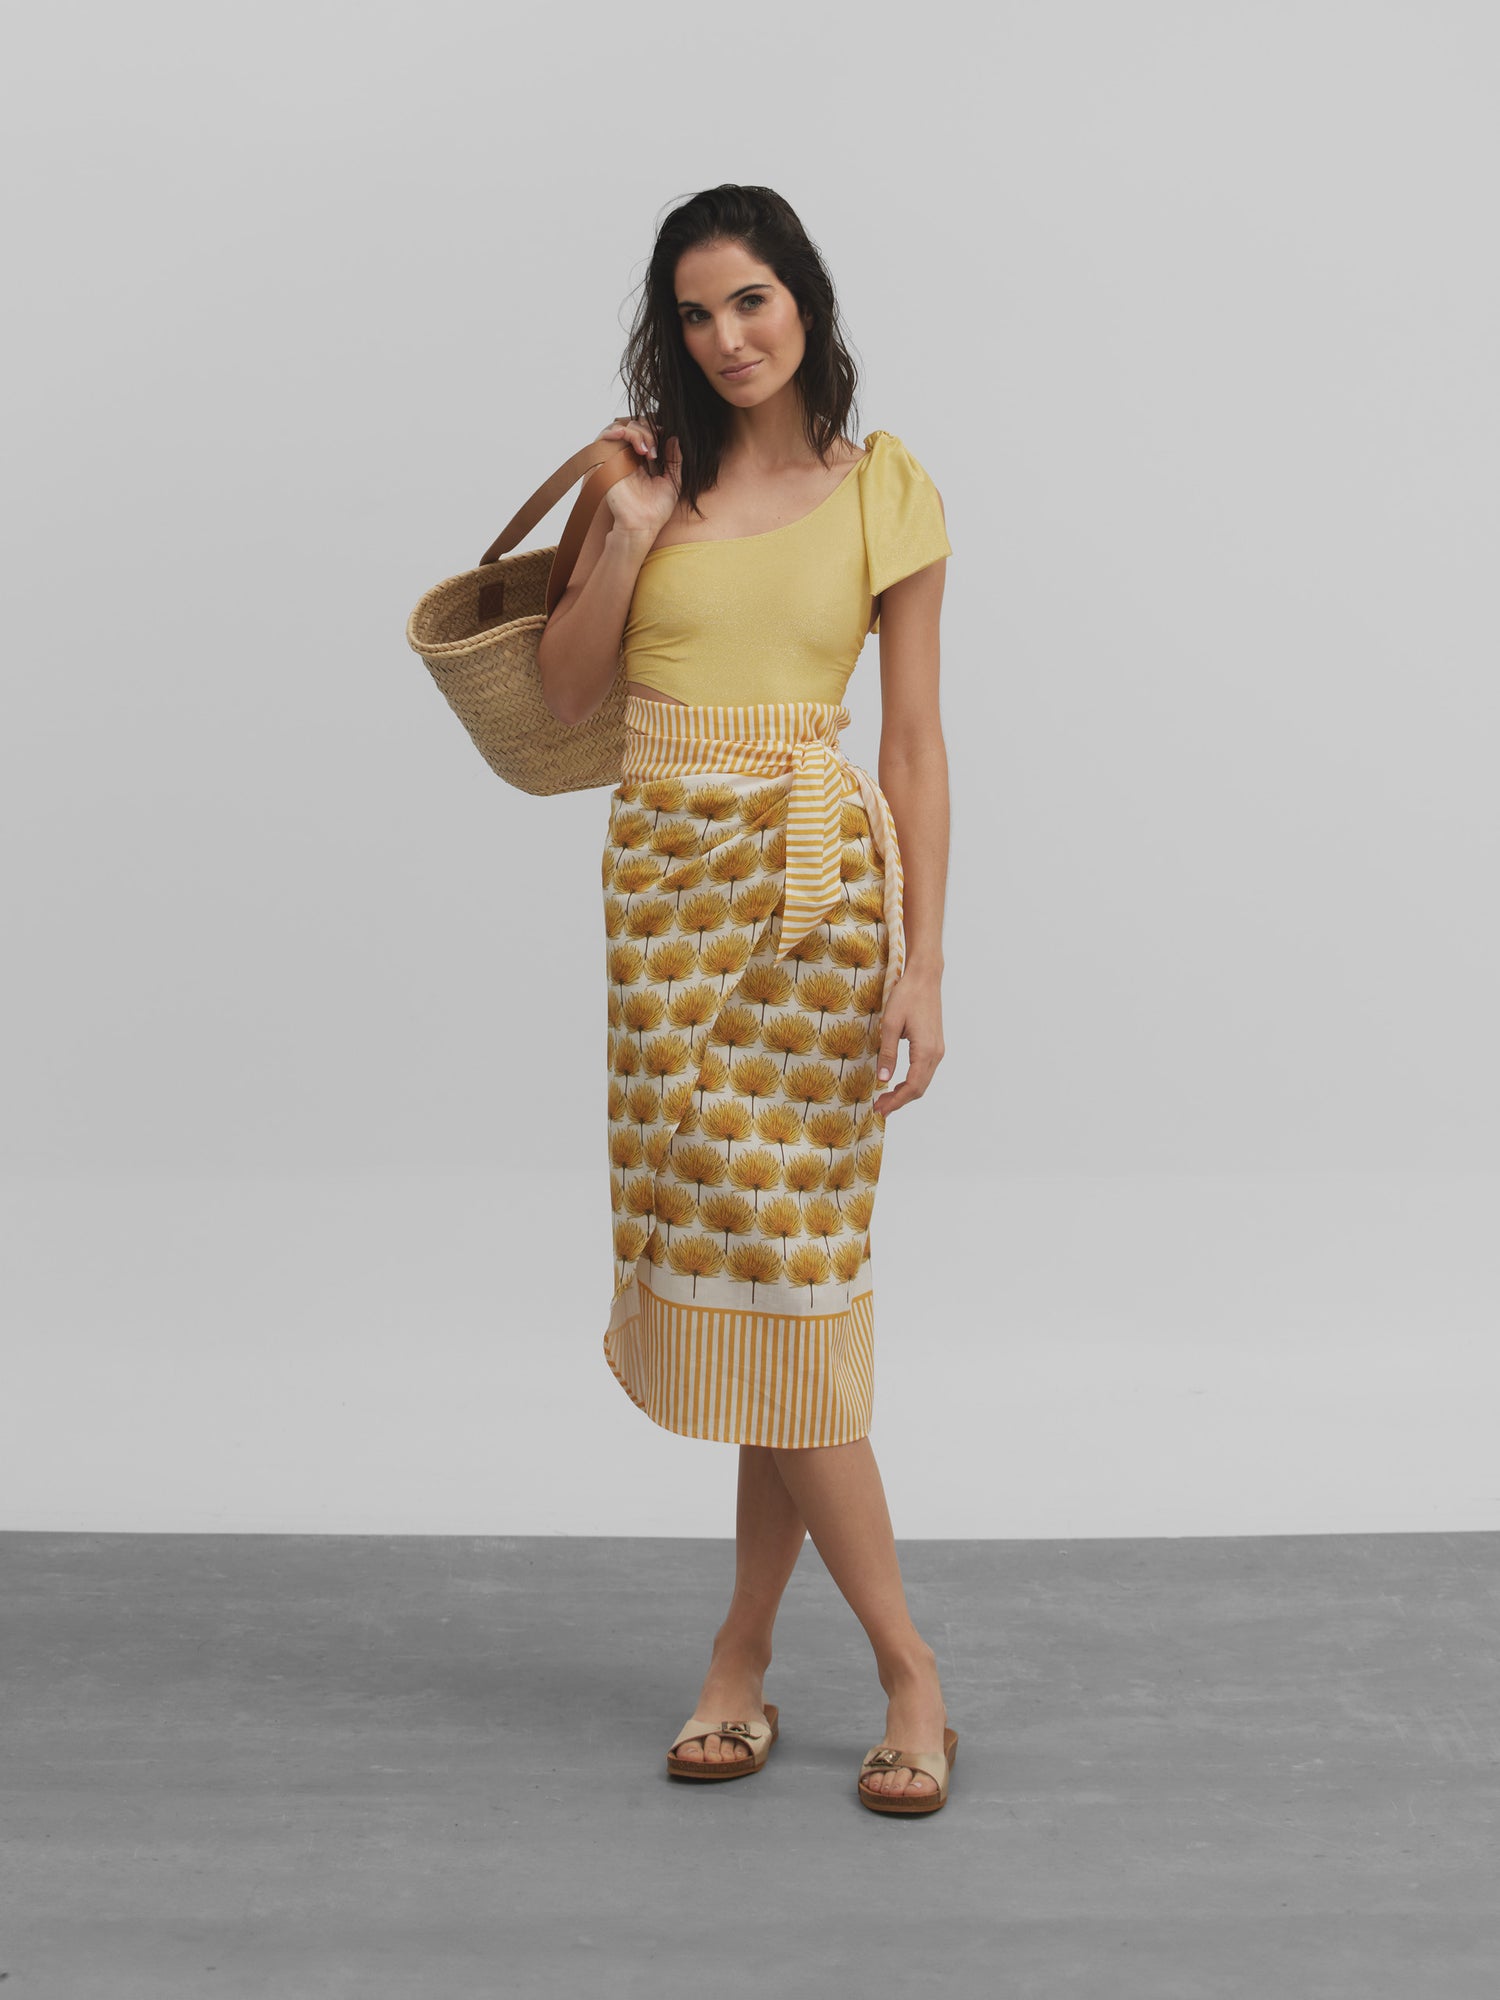 Yellow palm print sarong skirt